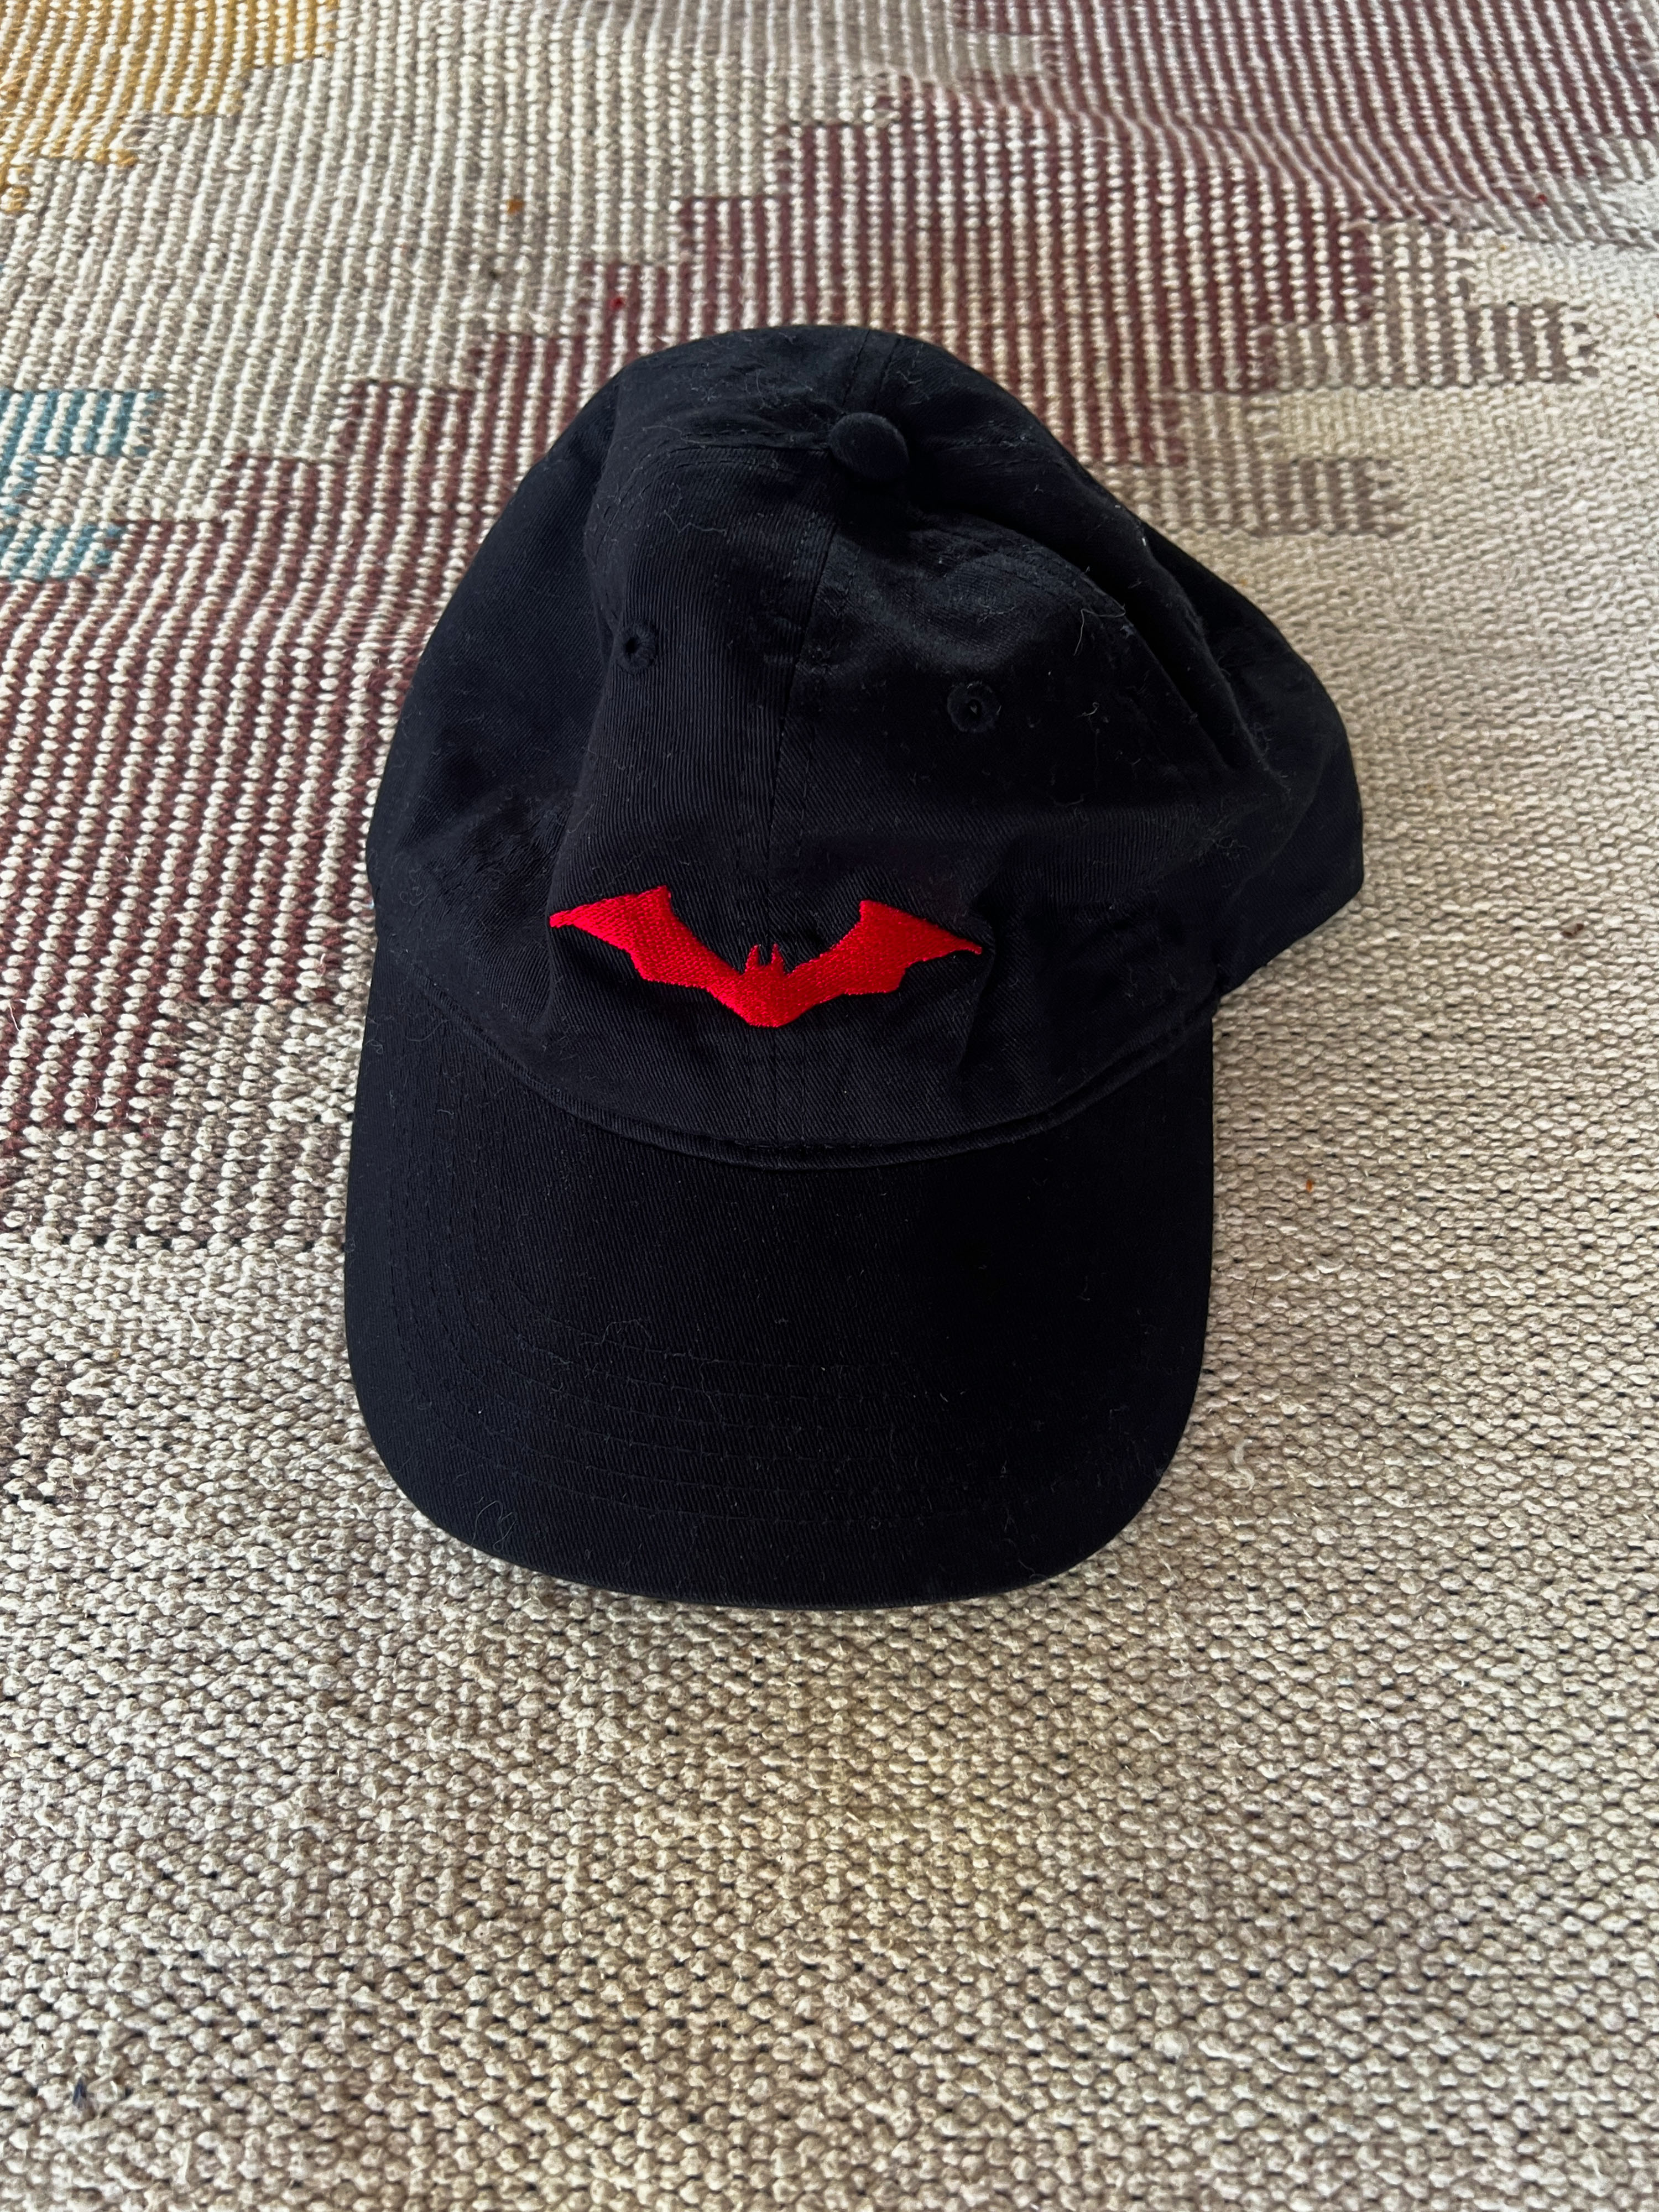 THE BATMAN  offical merch cap